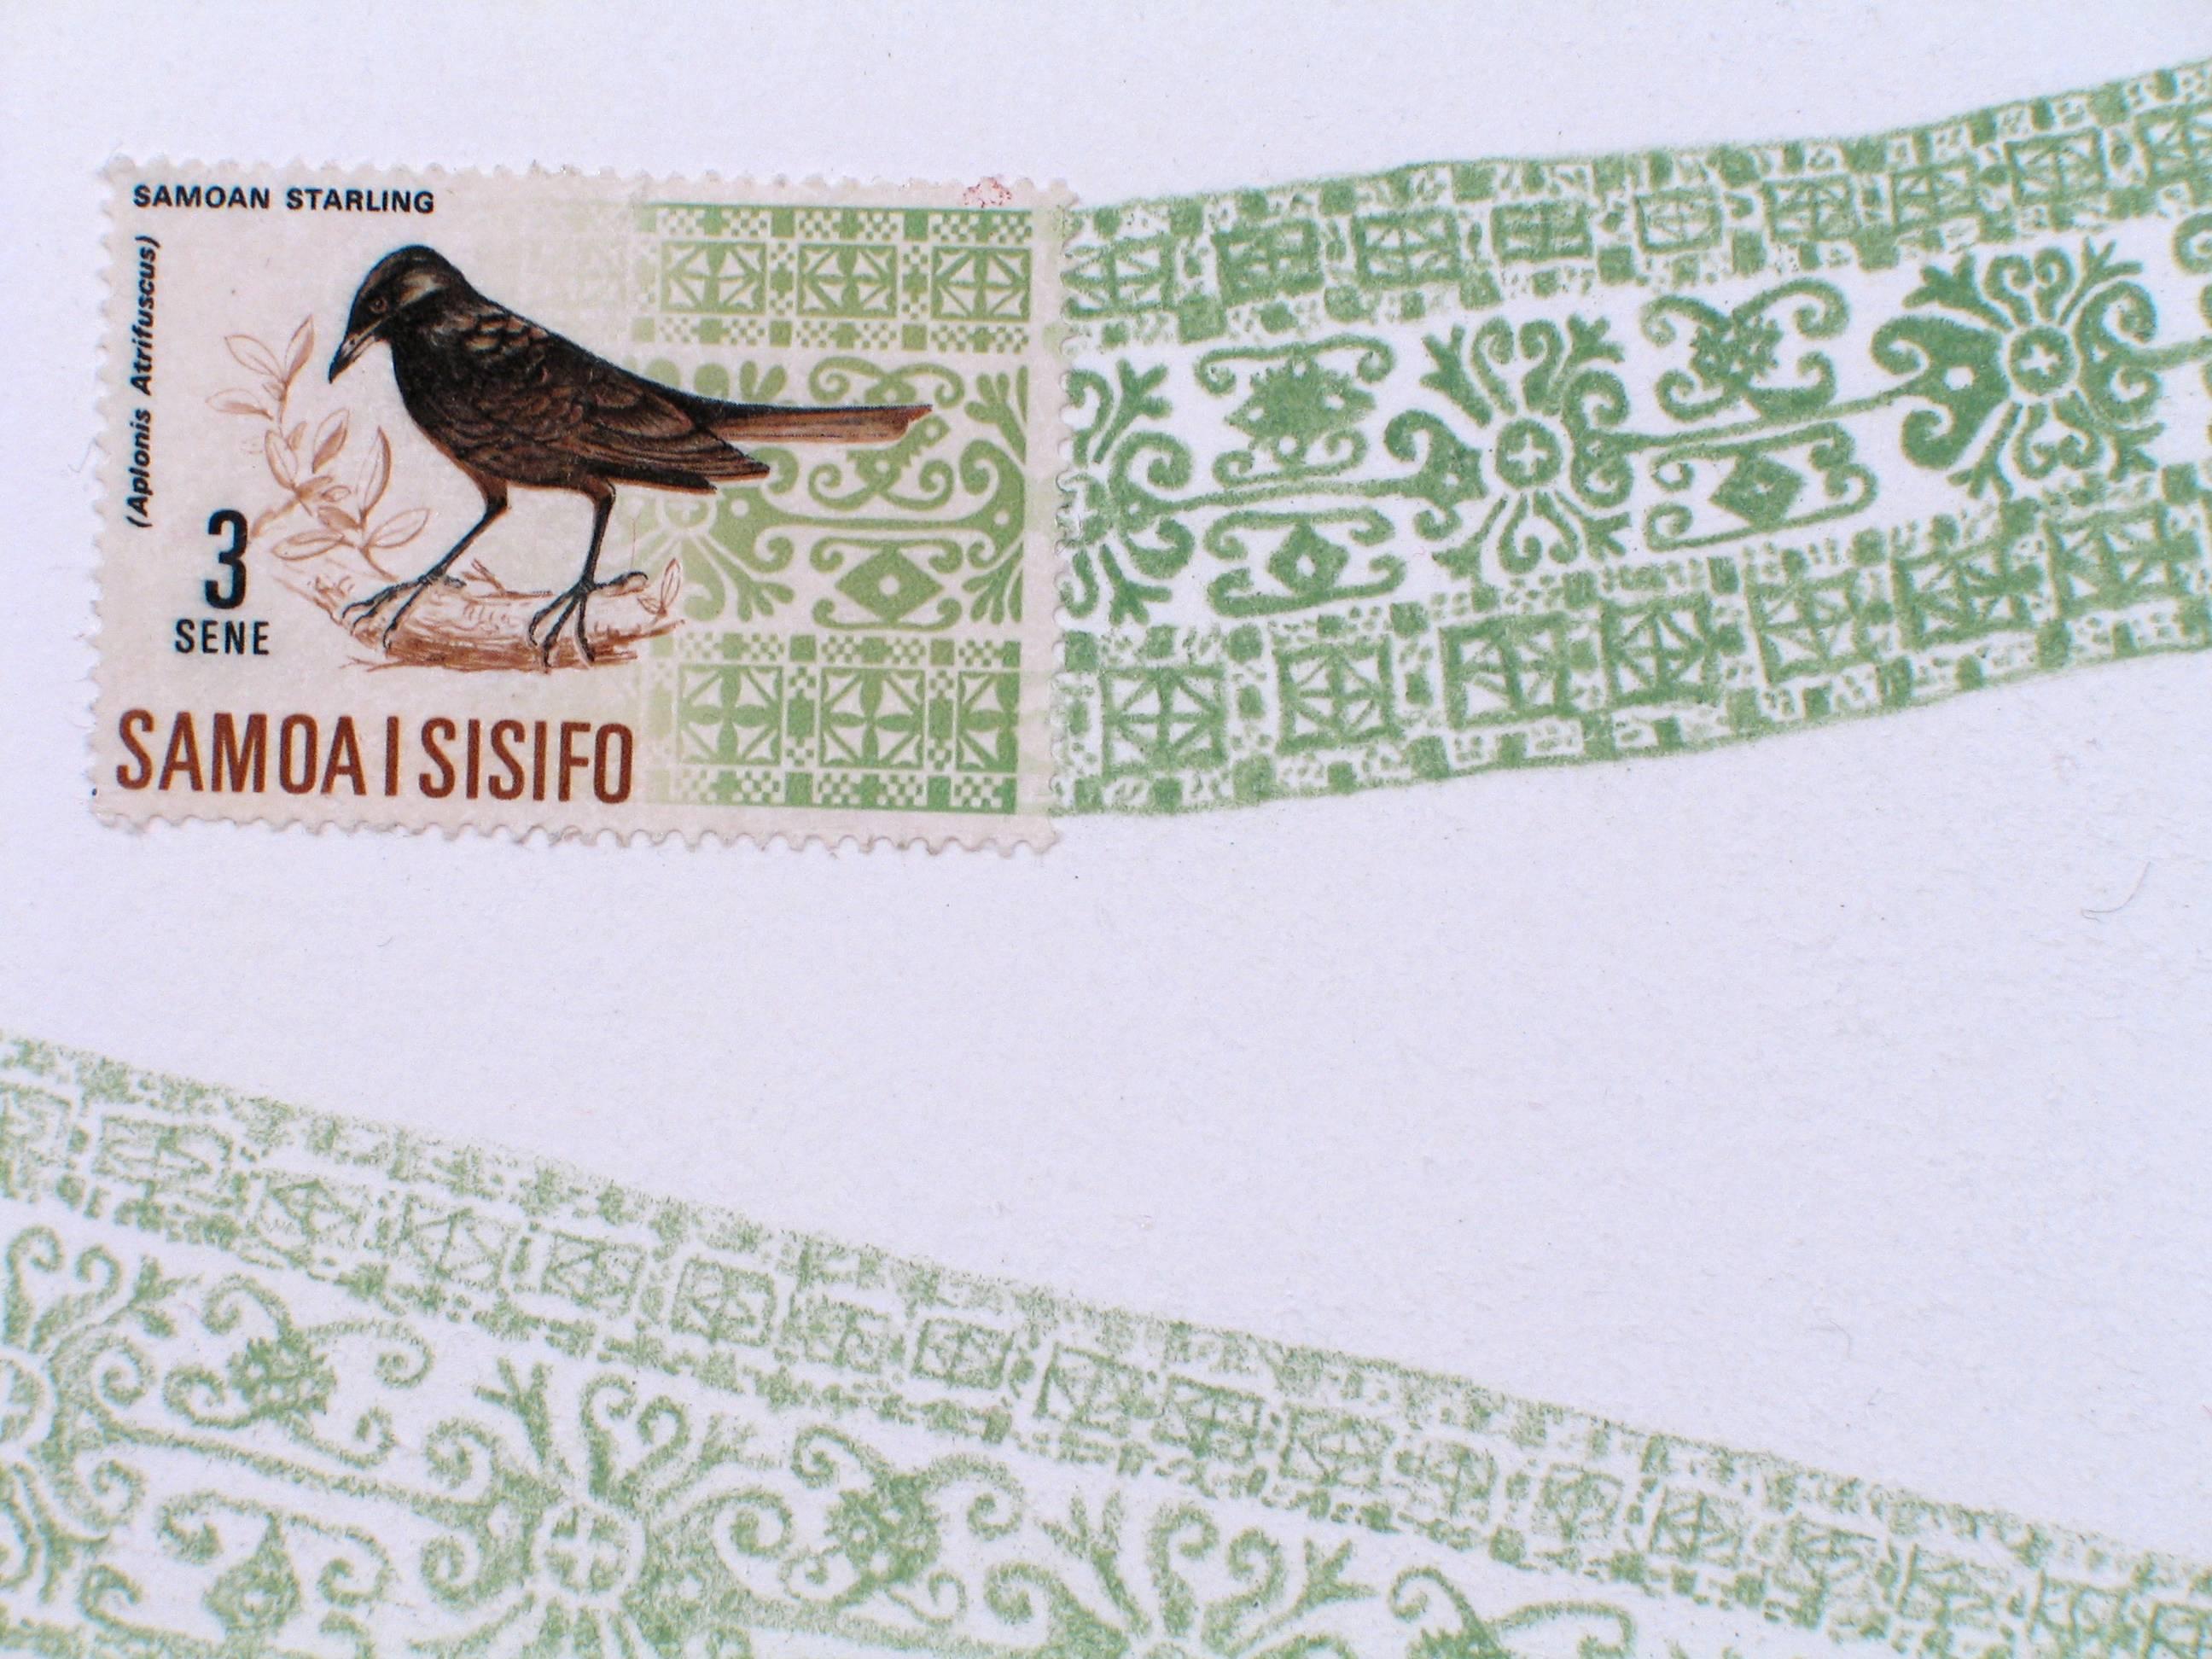 Samoa, motif d'avion vert (D'un dessin au crayon de couleur verte et d'un cachet d'oiseau) - Art de Andrea Moreau